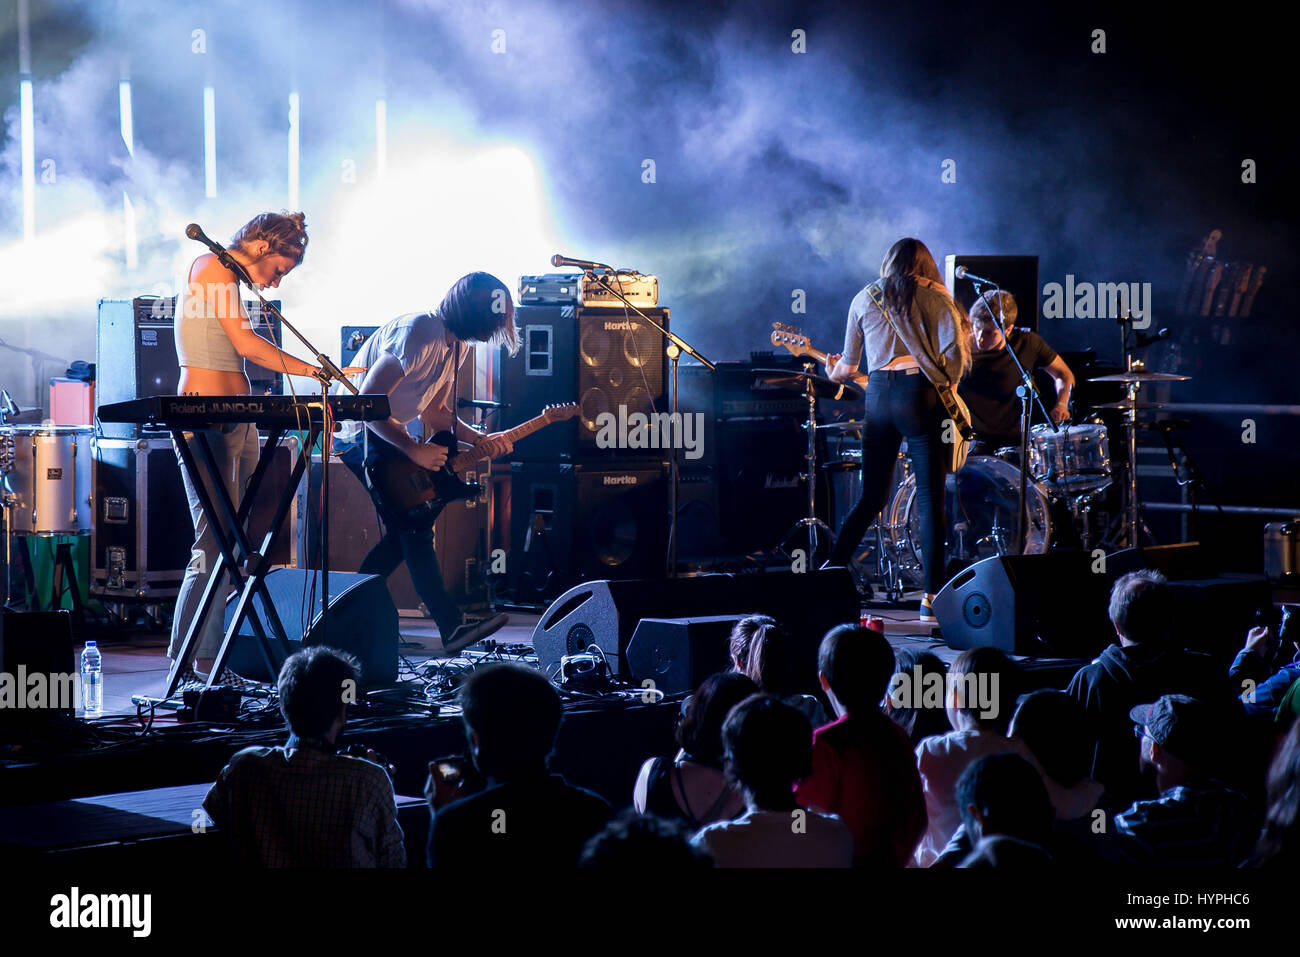 Barcellona - 5 set: Belako (banda) in concerto presso il Tibidabo Live Festival il 5 settembre 2015 a Barcellona, Spagna. Foto Stock